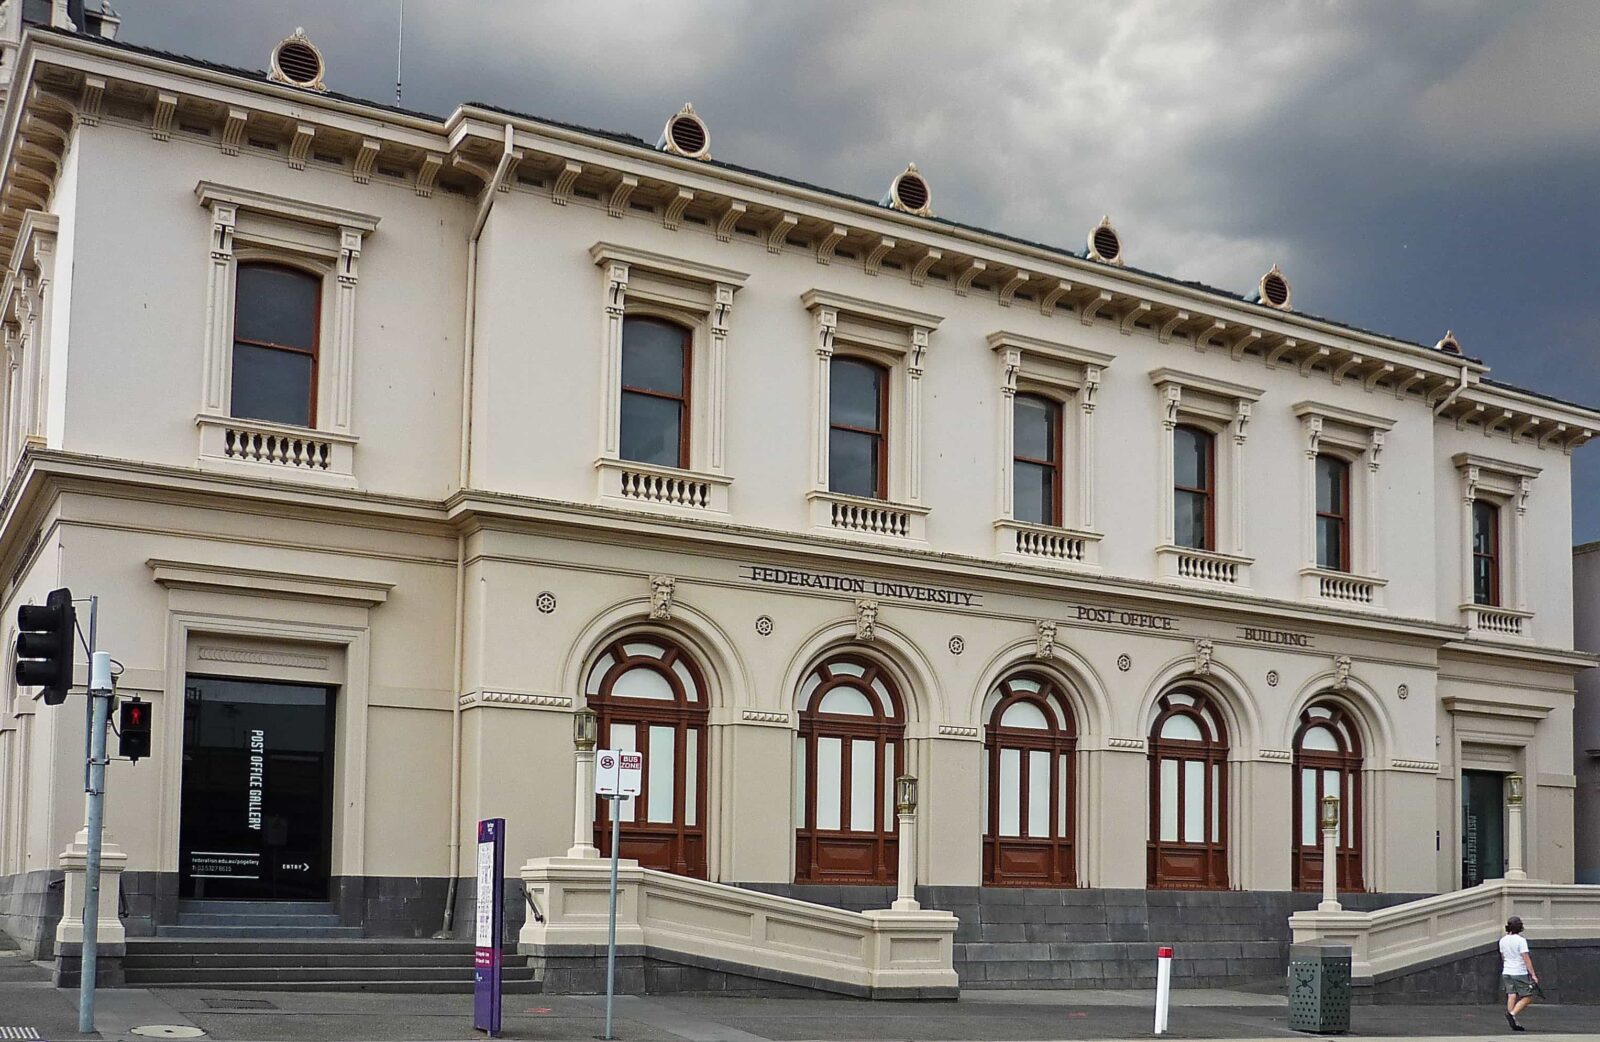 Post Office Gallery, Sturt St, Ballarat